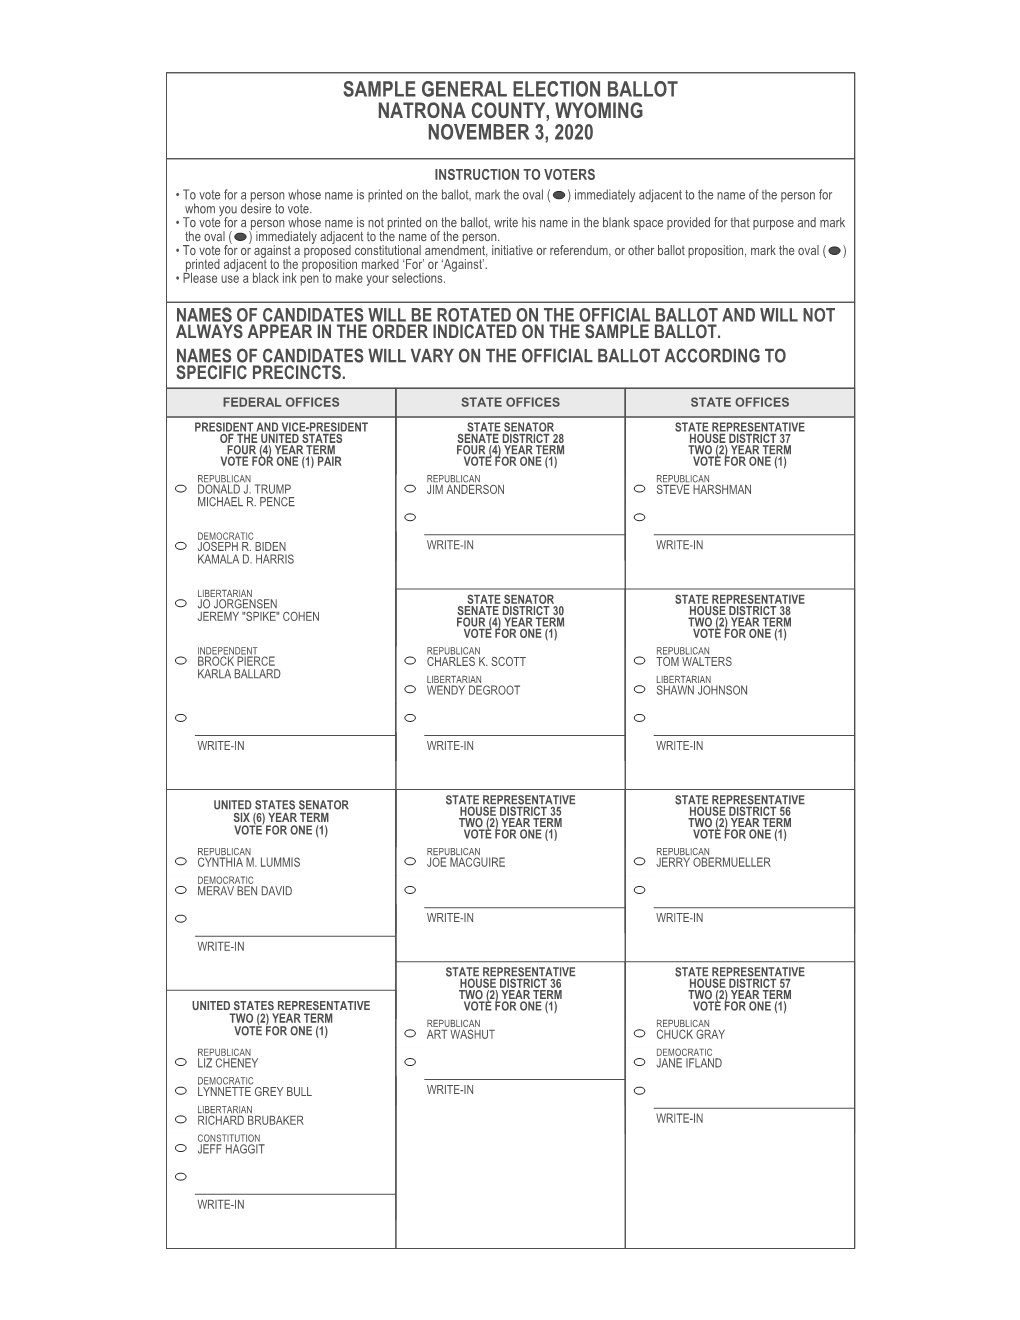 Sample General Election Ballot Natrona County, Wyoming November 3, 2020